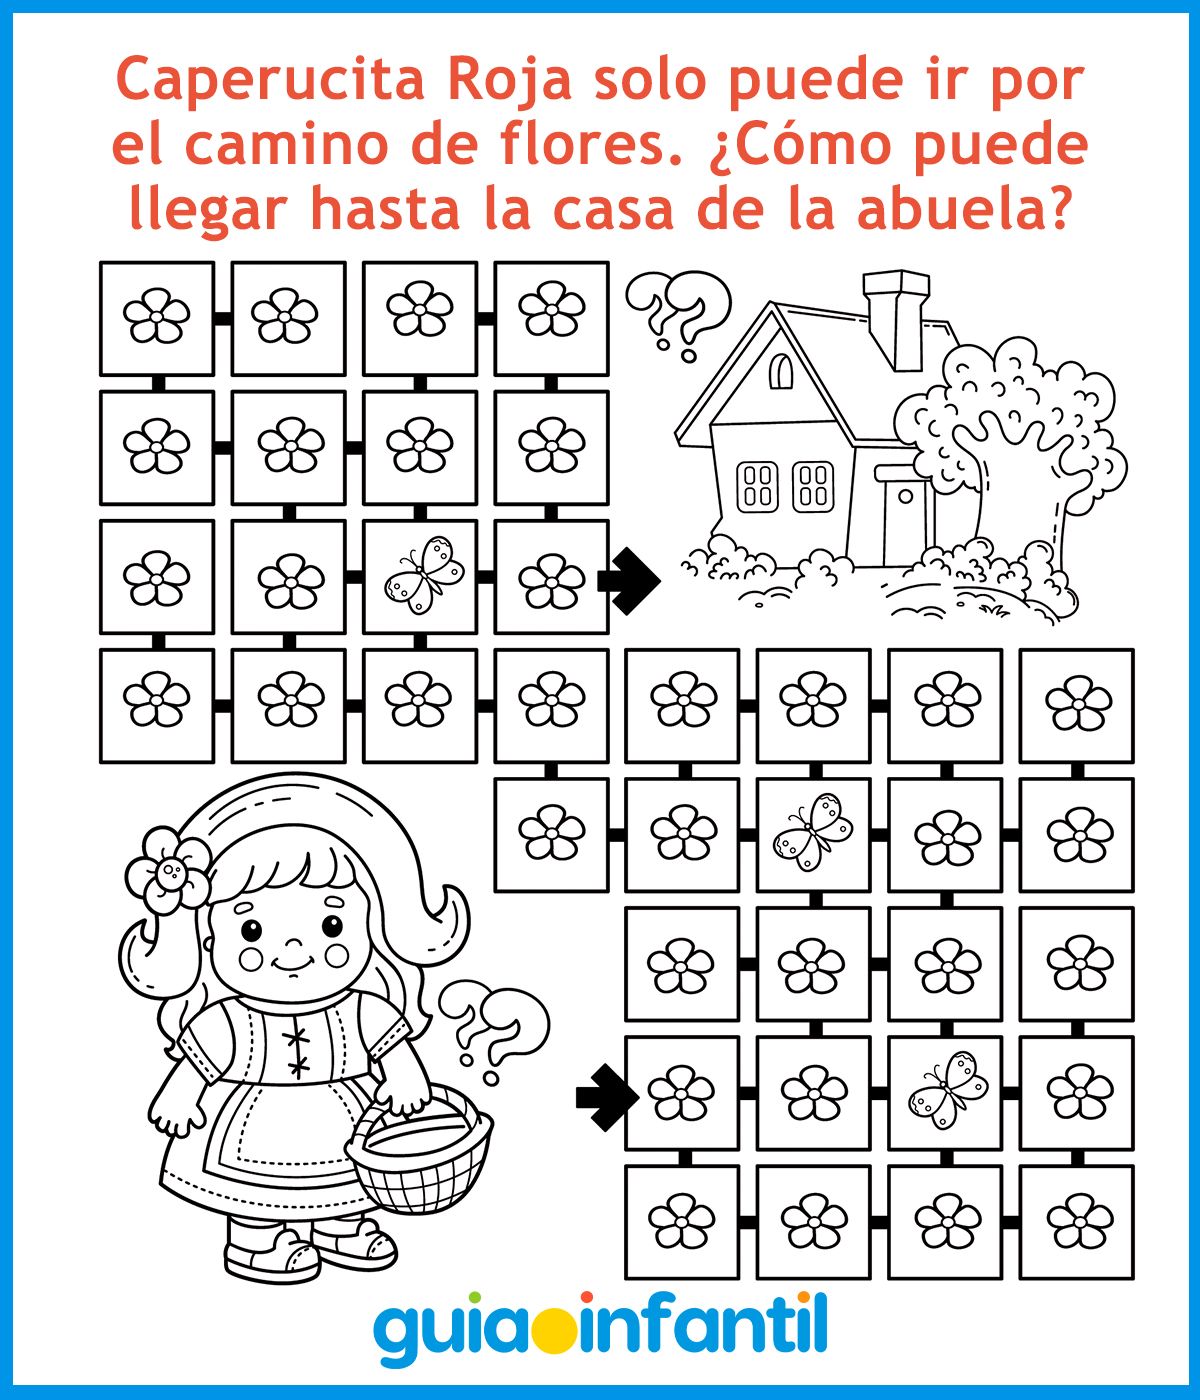 Cuentos para niños de 2 años (Spanish Edition)